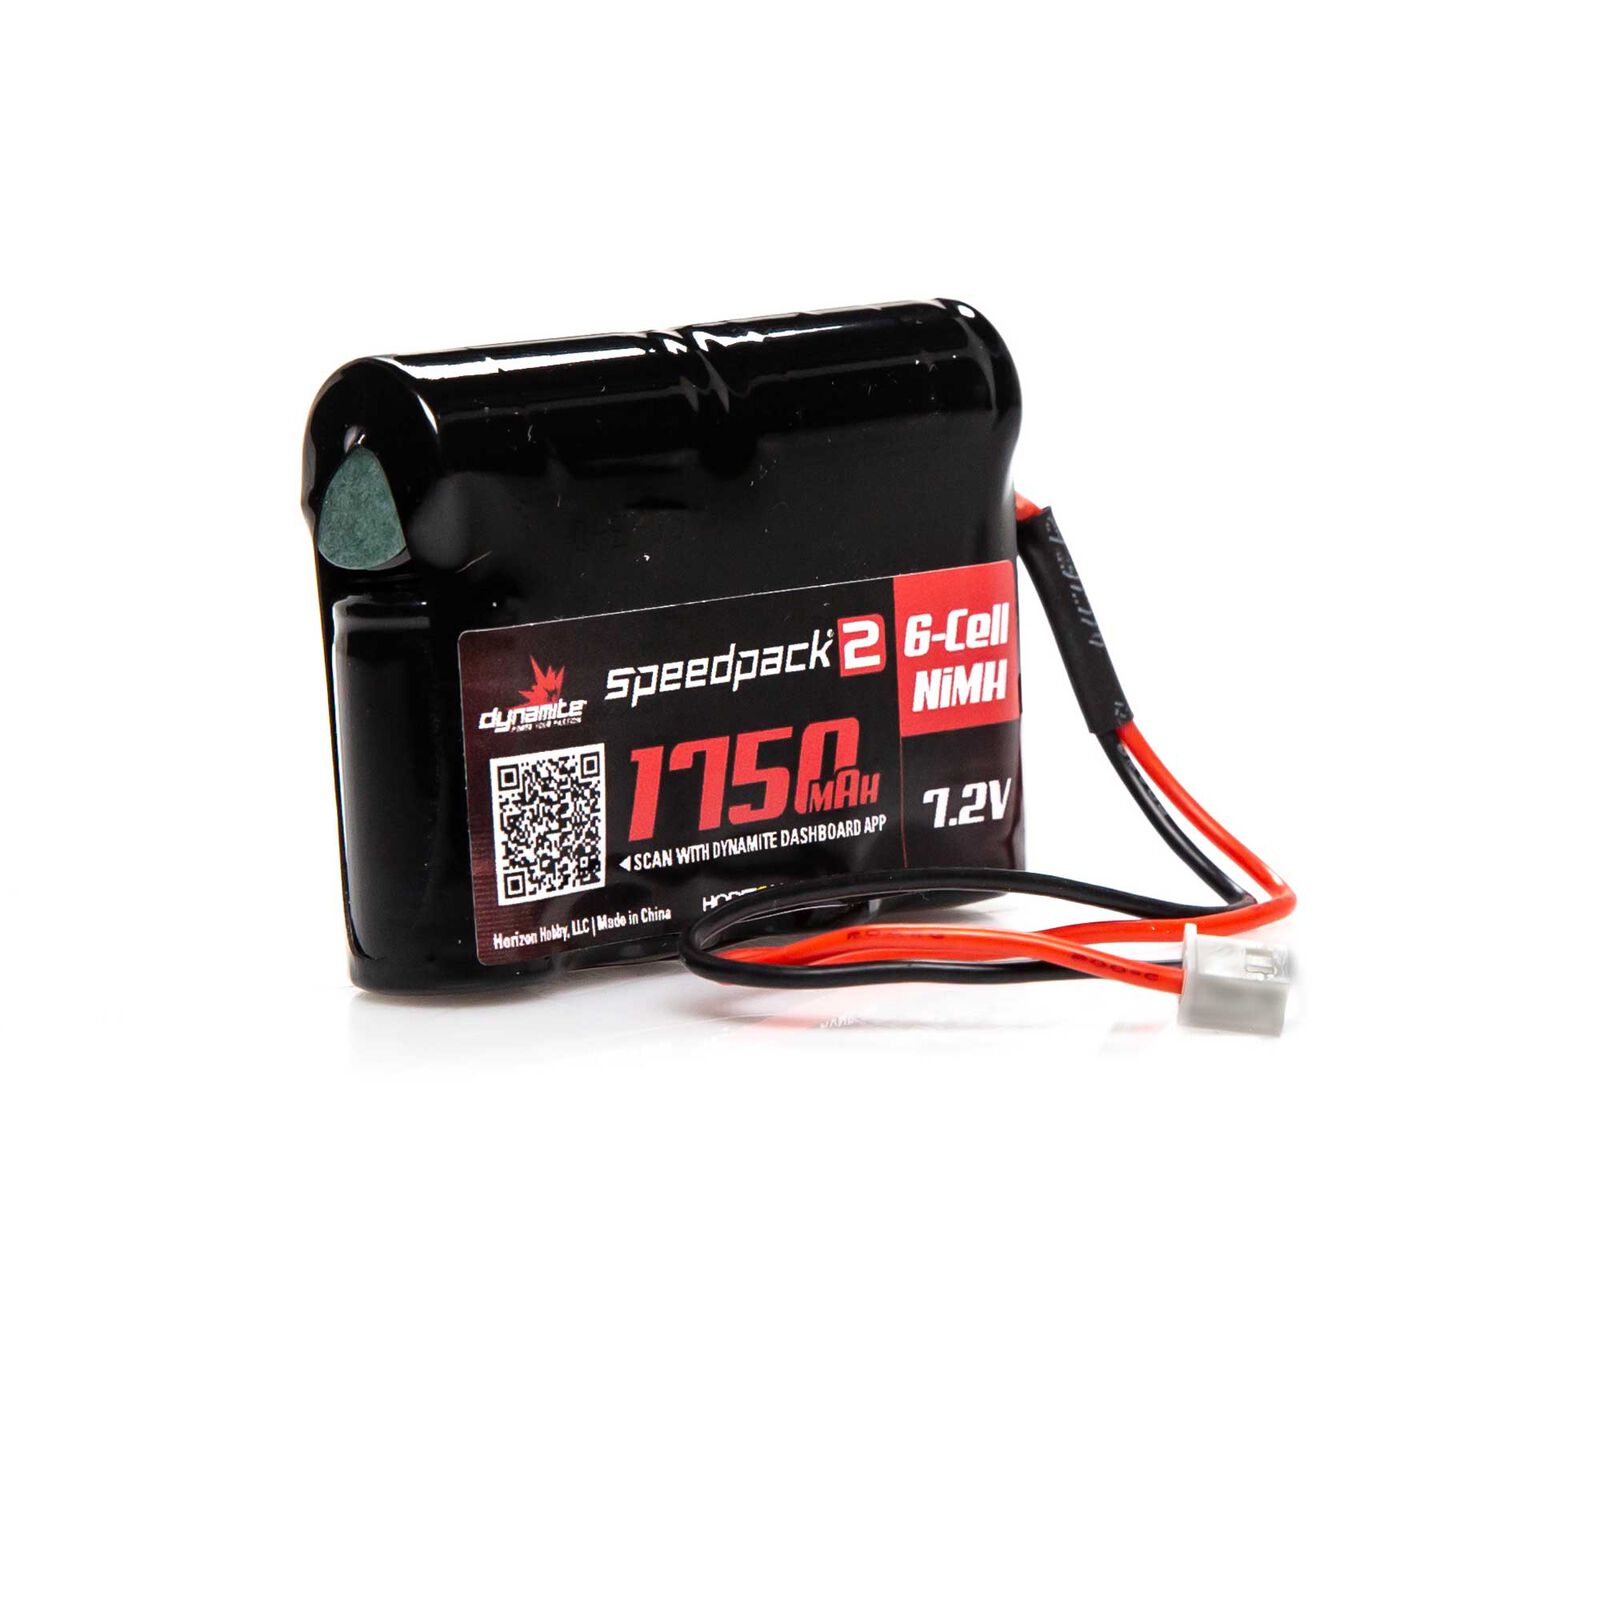 7.2V 1750mAh 6-Cell Speedpack2 Mini-T NiMH Battery: XH-1S (Losi Mini Plug)